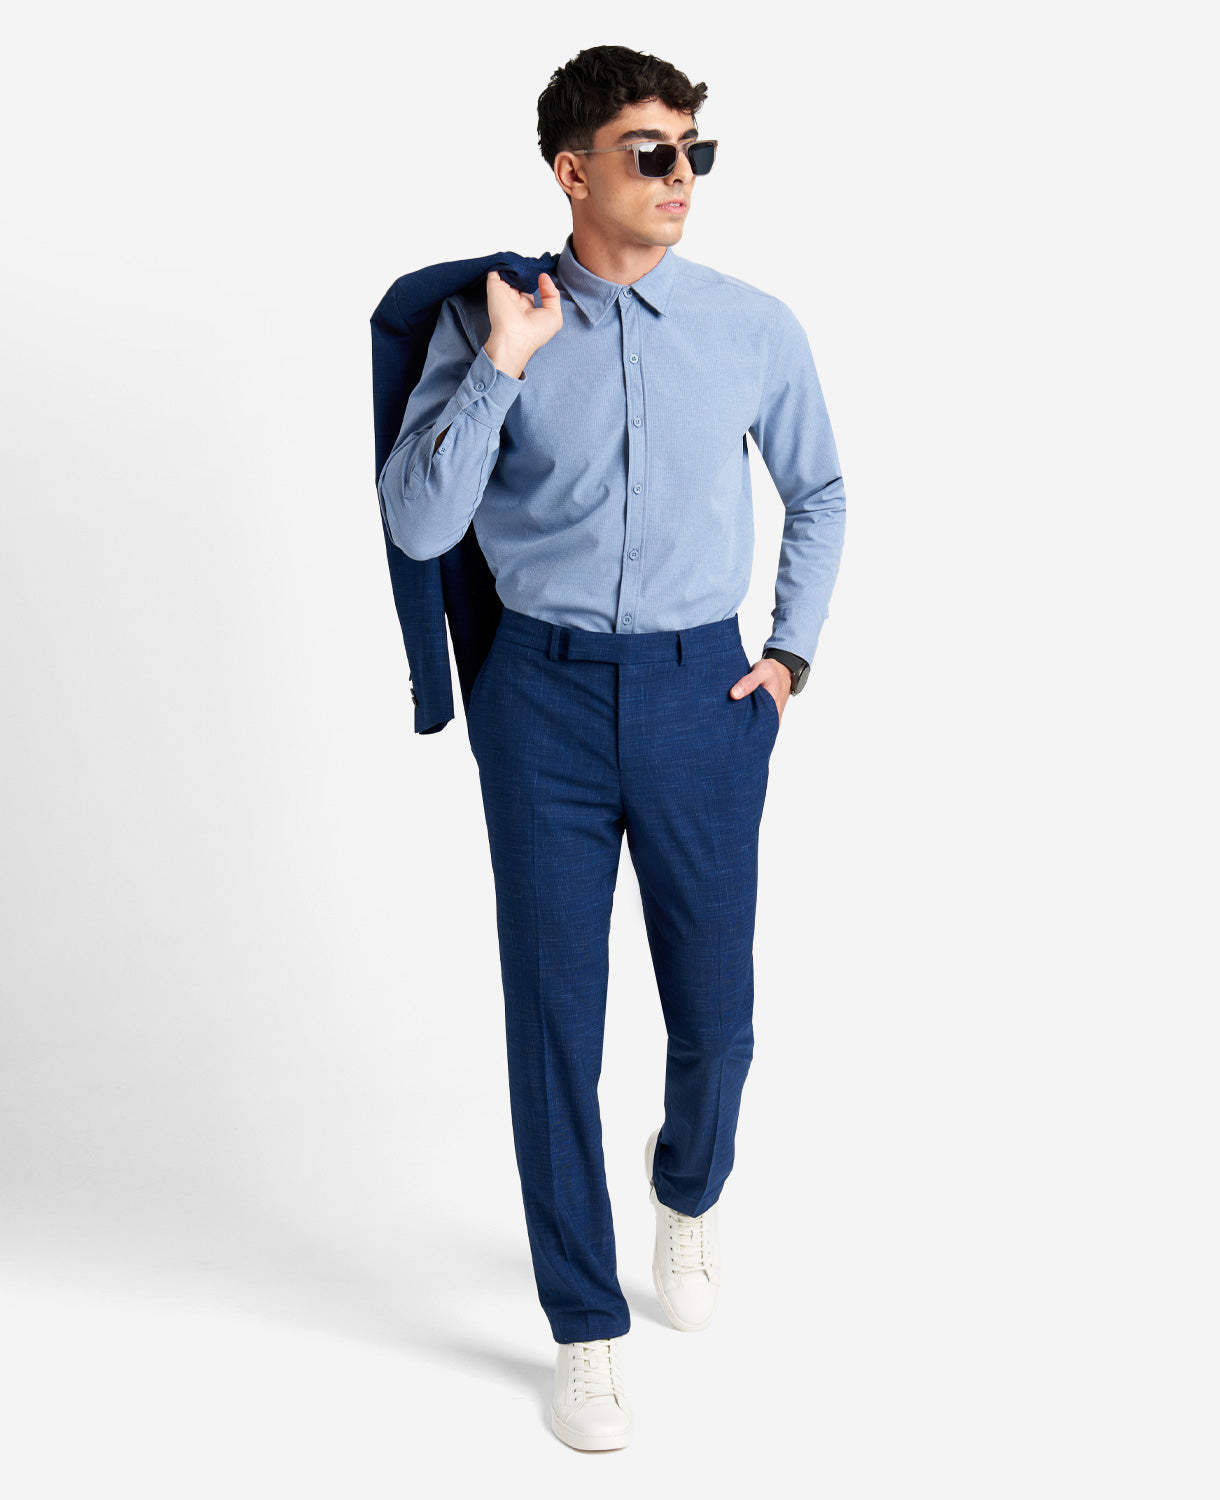 Kenneth Cole Mens Suit Dress Pants 37 x 32 Royal Blue Flex Slim-Fit Stretch